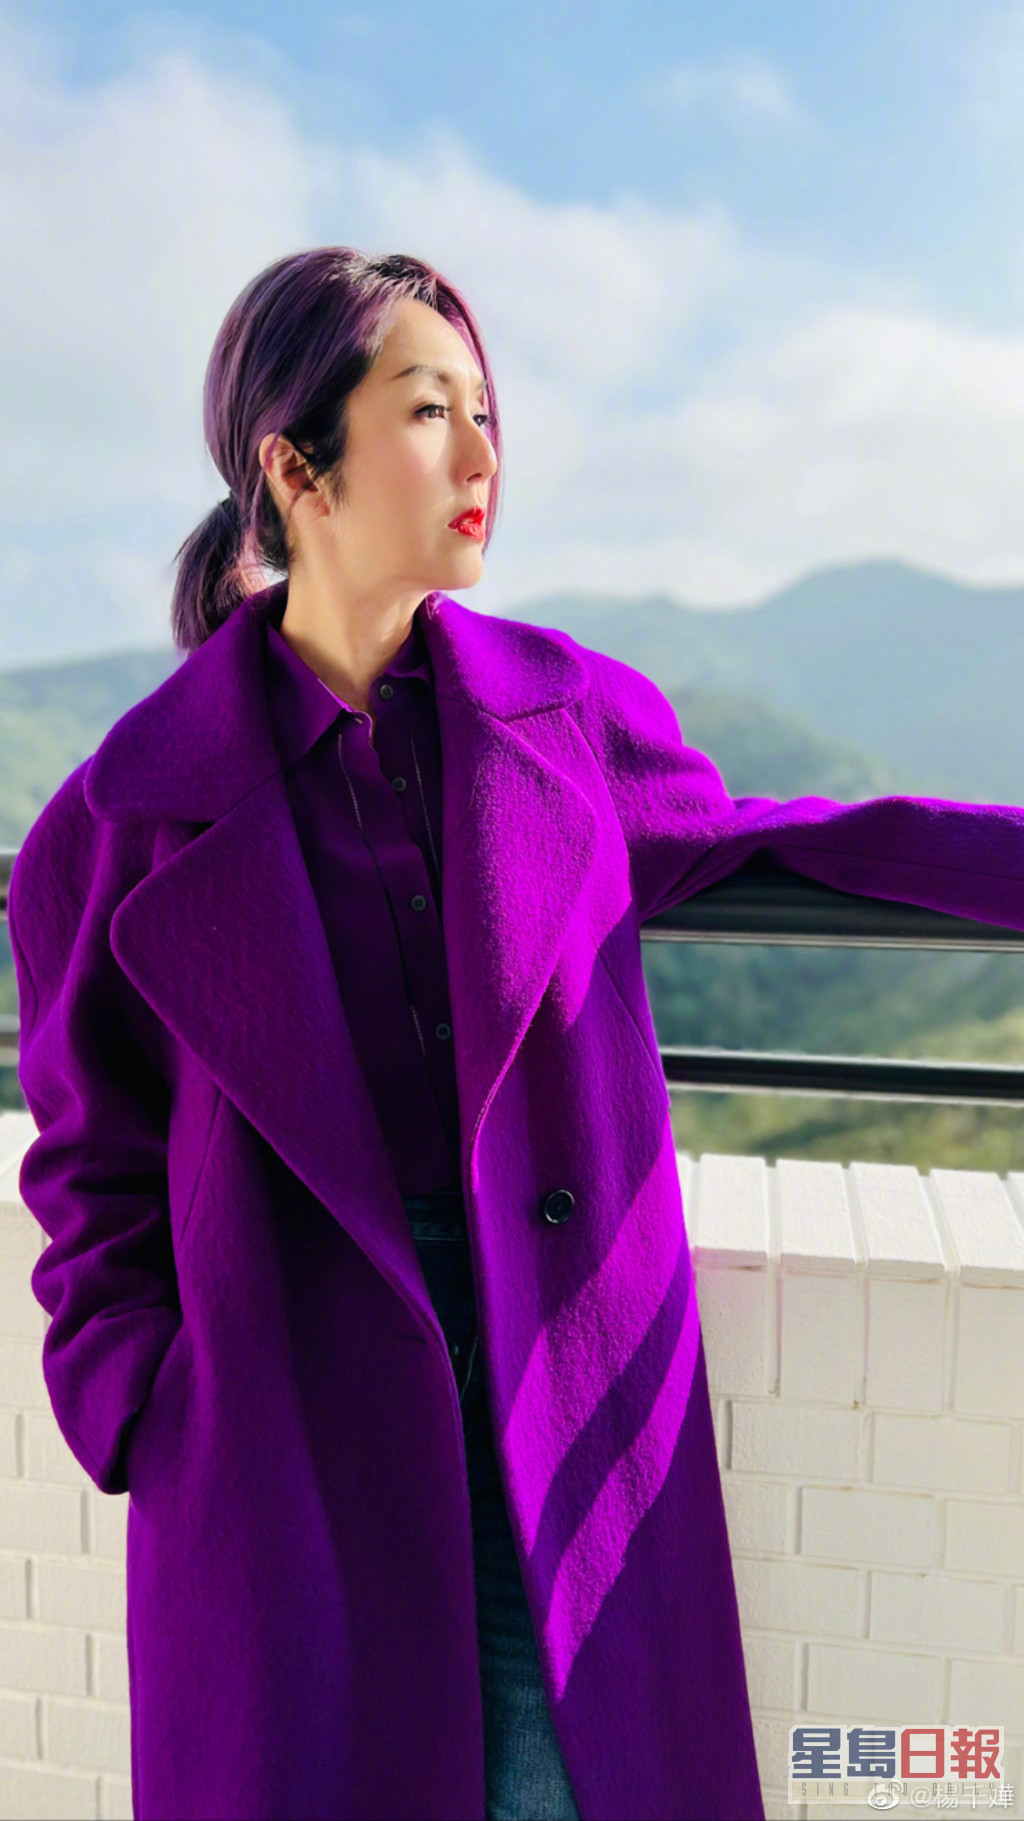 楊千嬅鍾意紫色到曾經推出歌曲《紫色》。